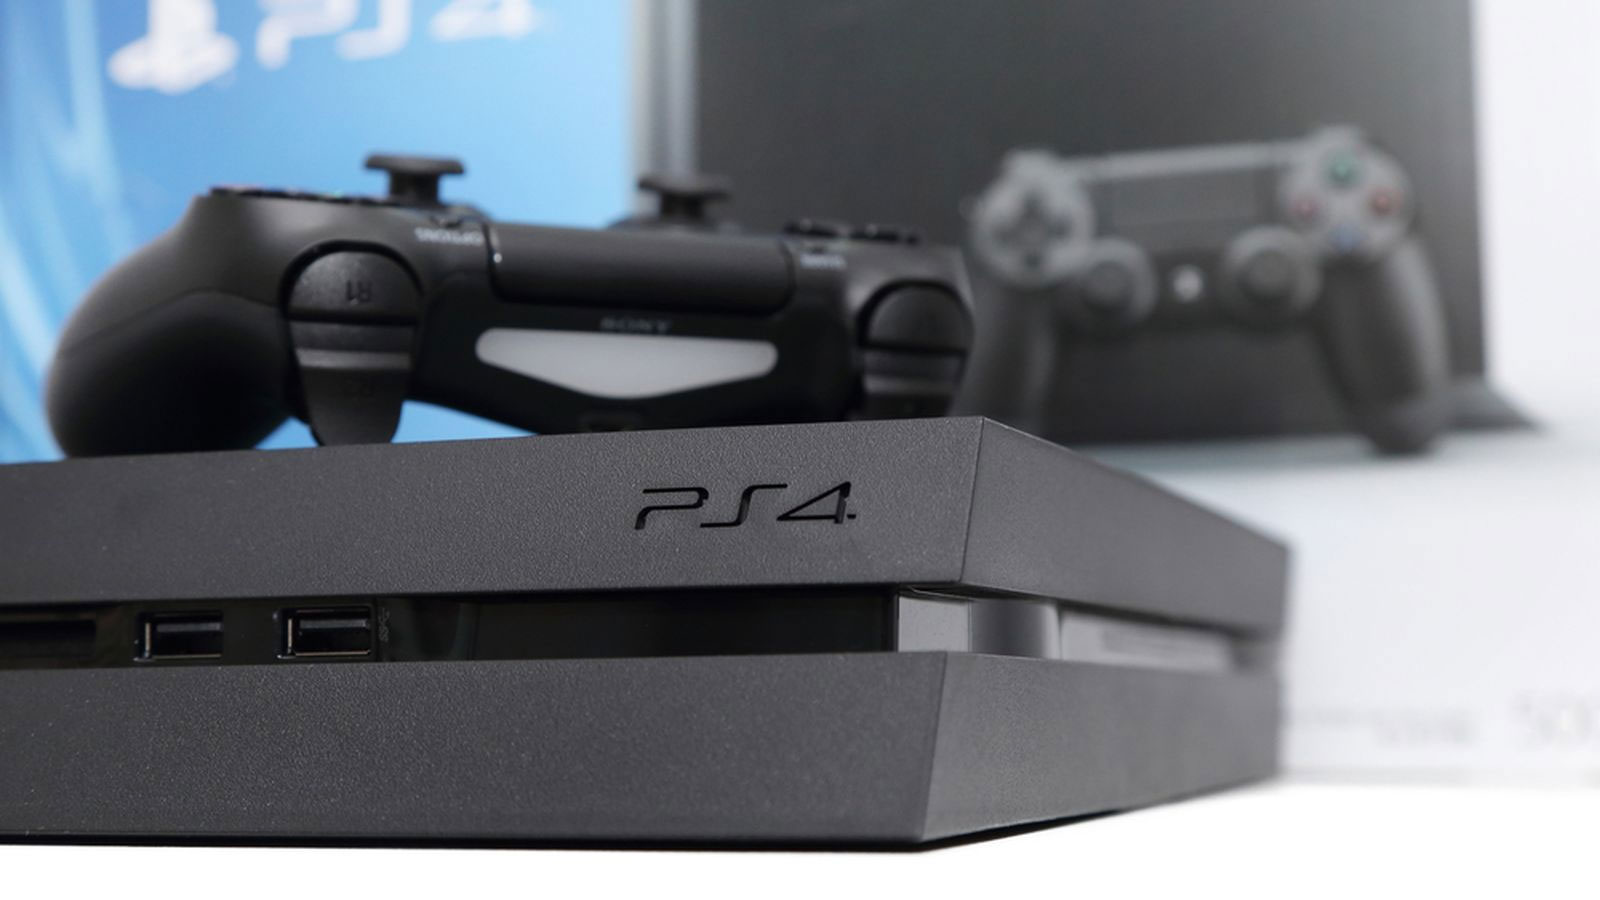 Specyfikacja techniczna PS4 NEO wyciekła do sieci